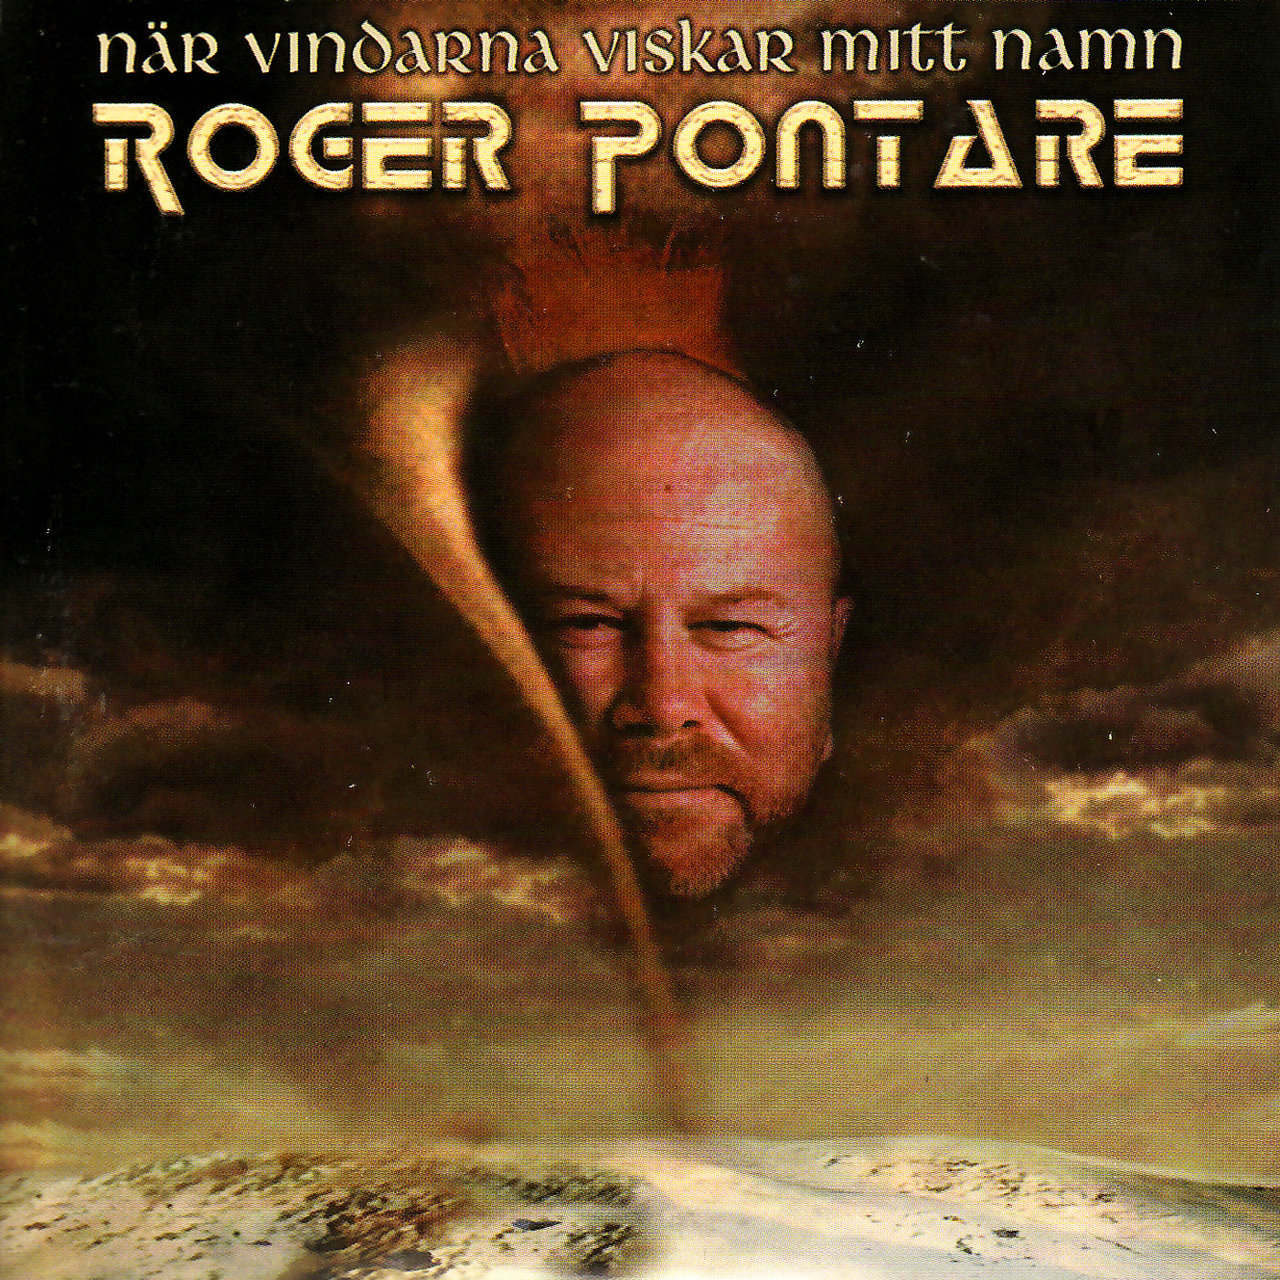 Roger Pontare När vindarna viskar mitt namn cover artwork